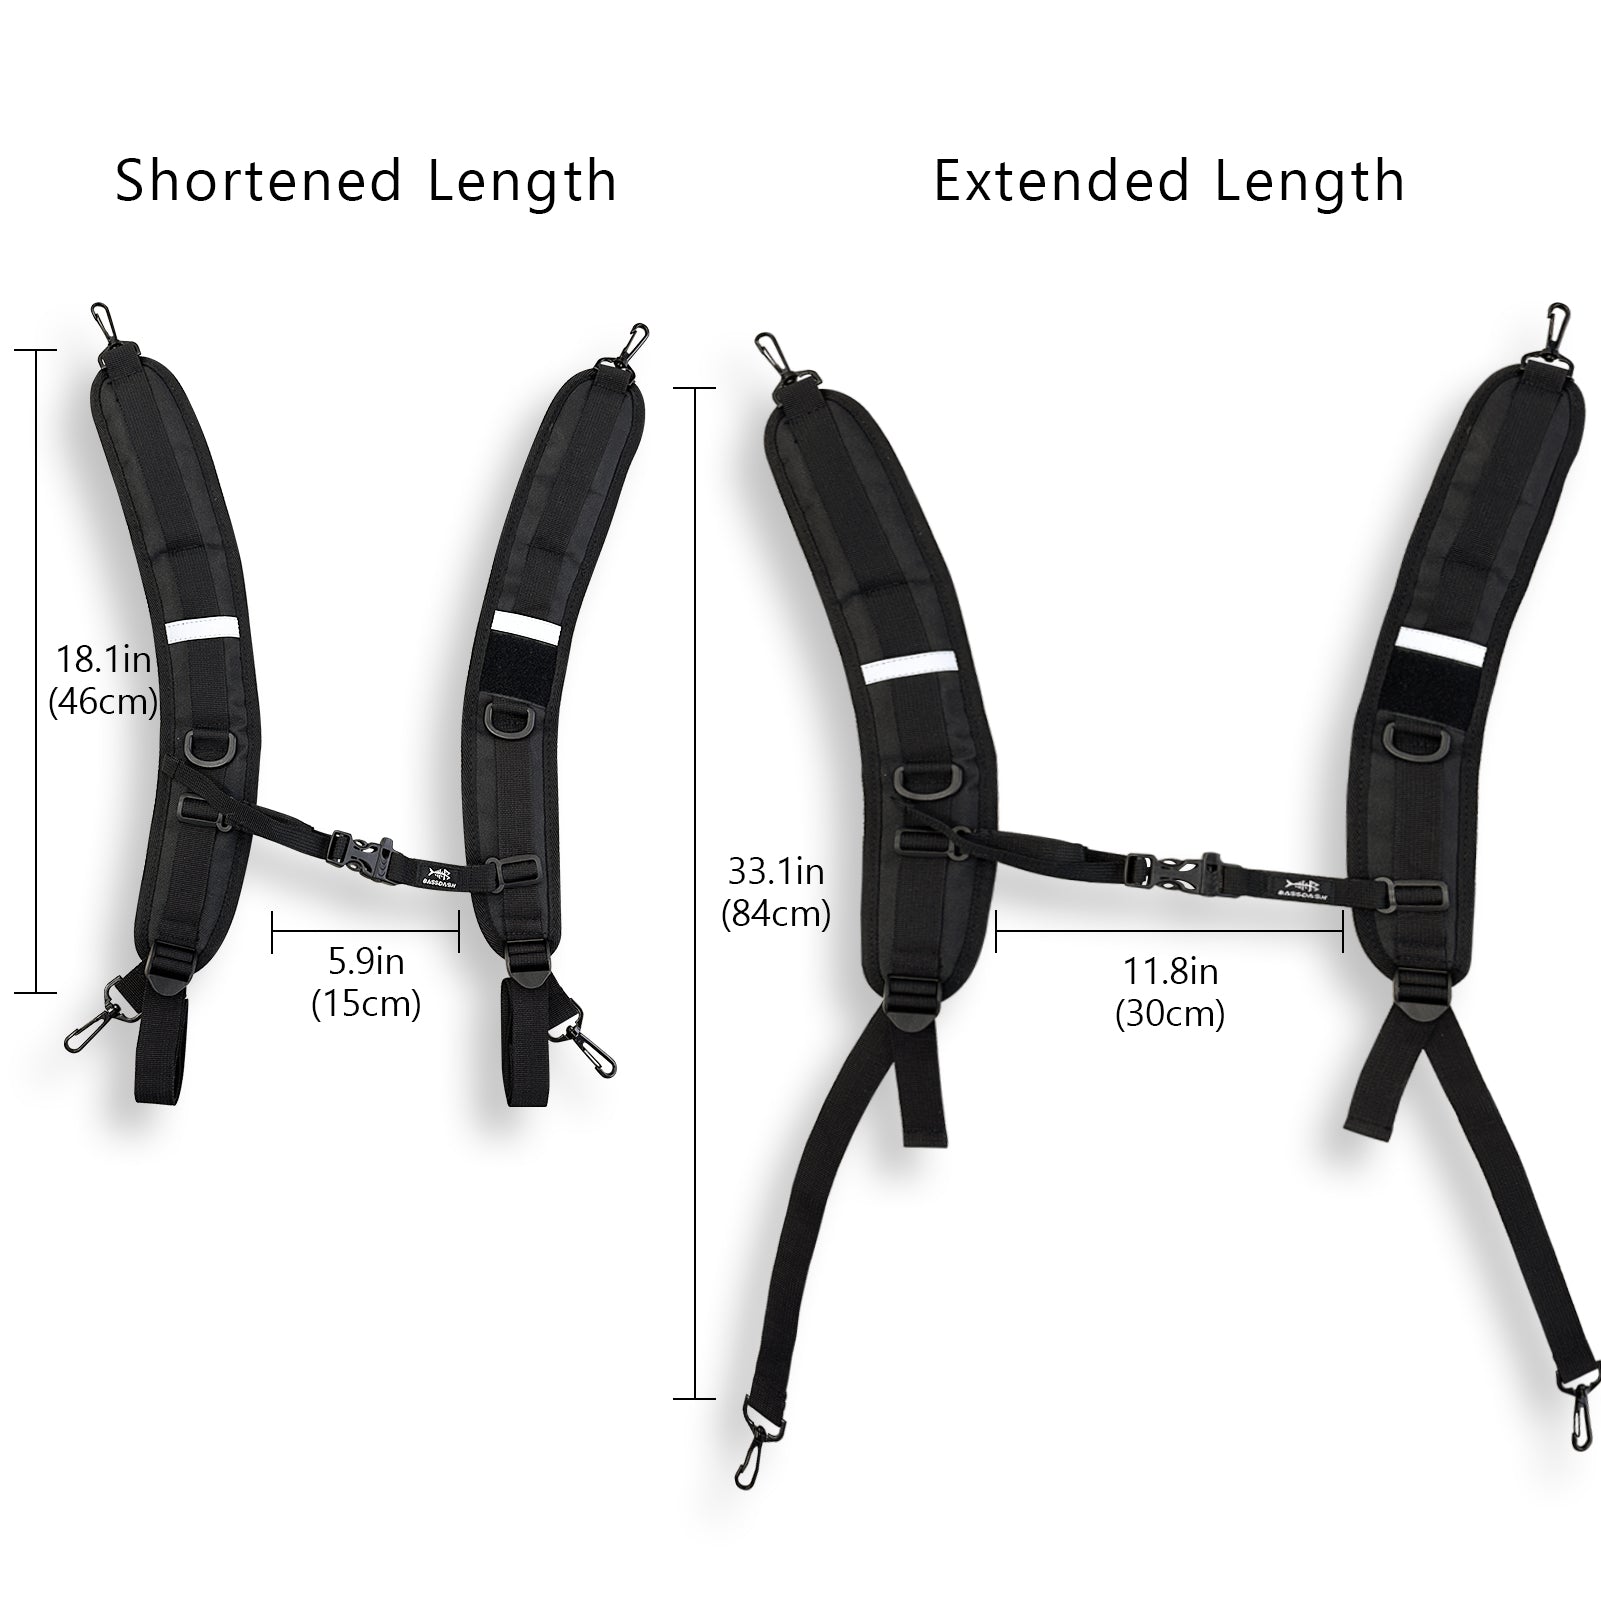  Golf Bag Strap Replacement Shoulder Adjustable Strap